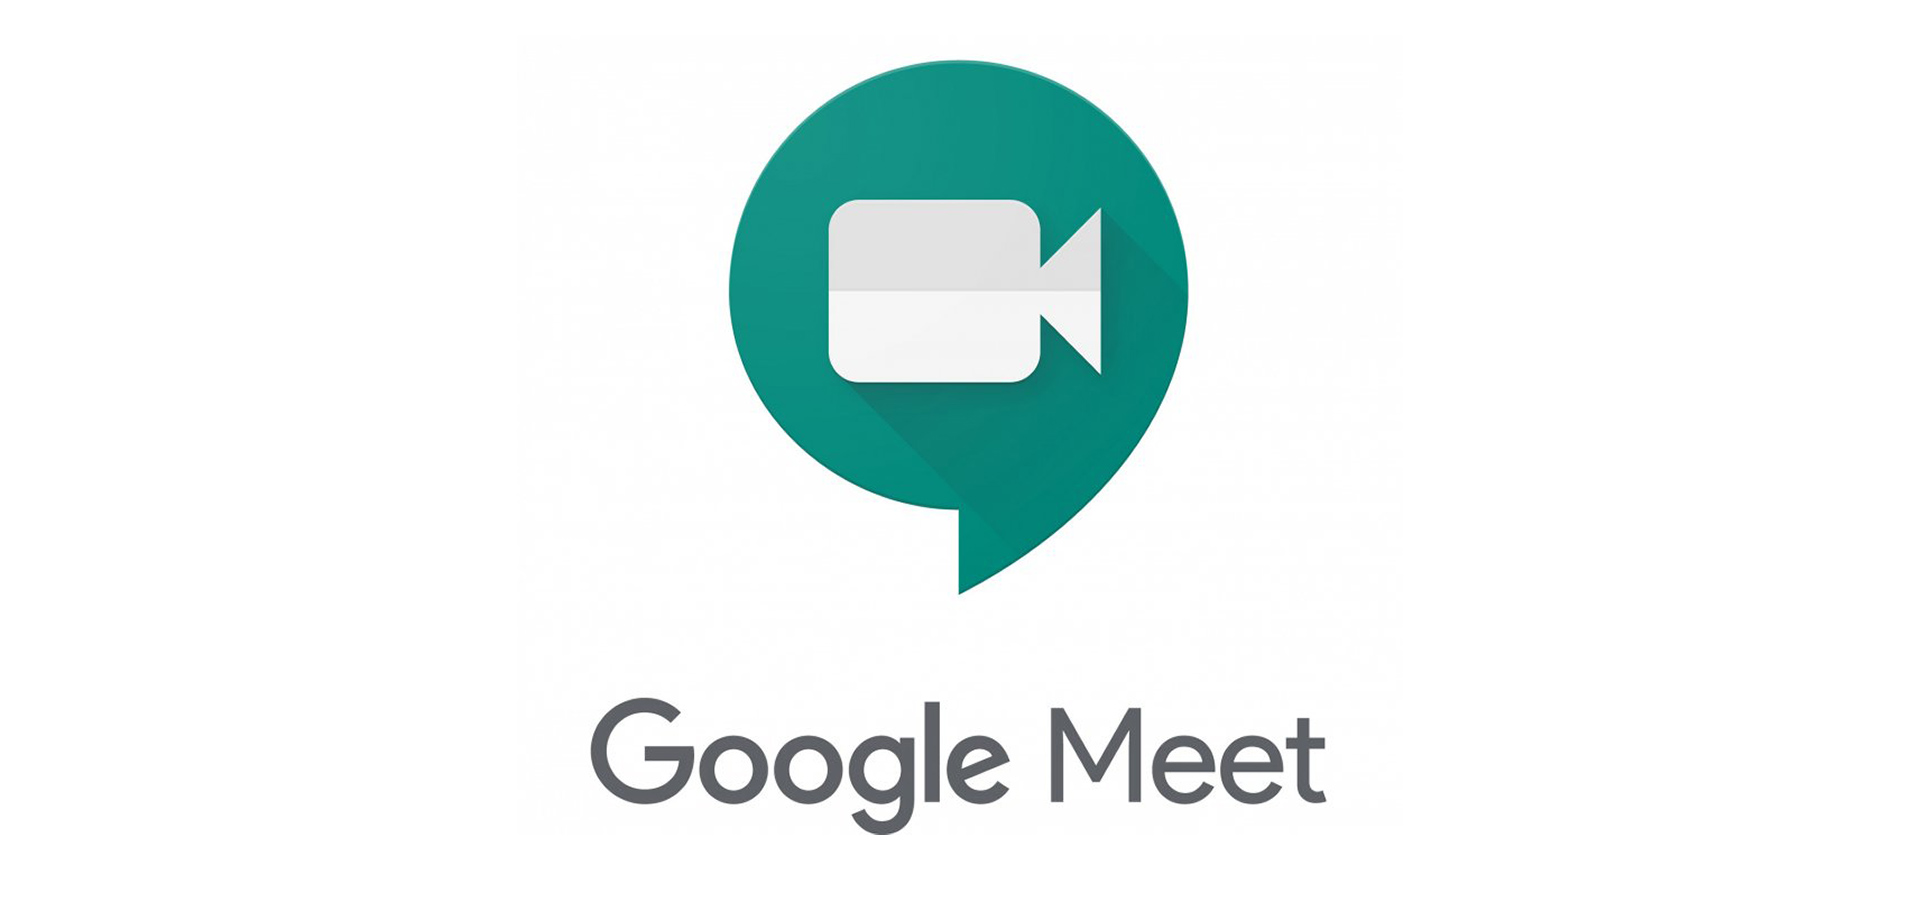 Új funkciót kap a Google Meet, már kezdheti válogatni a képeket hozzá